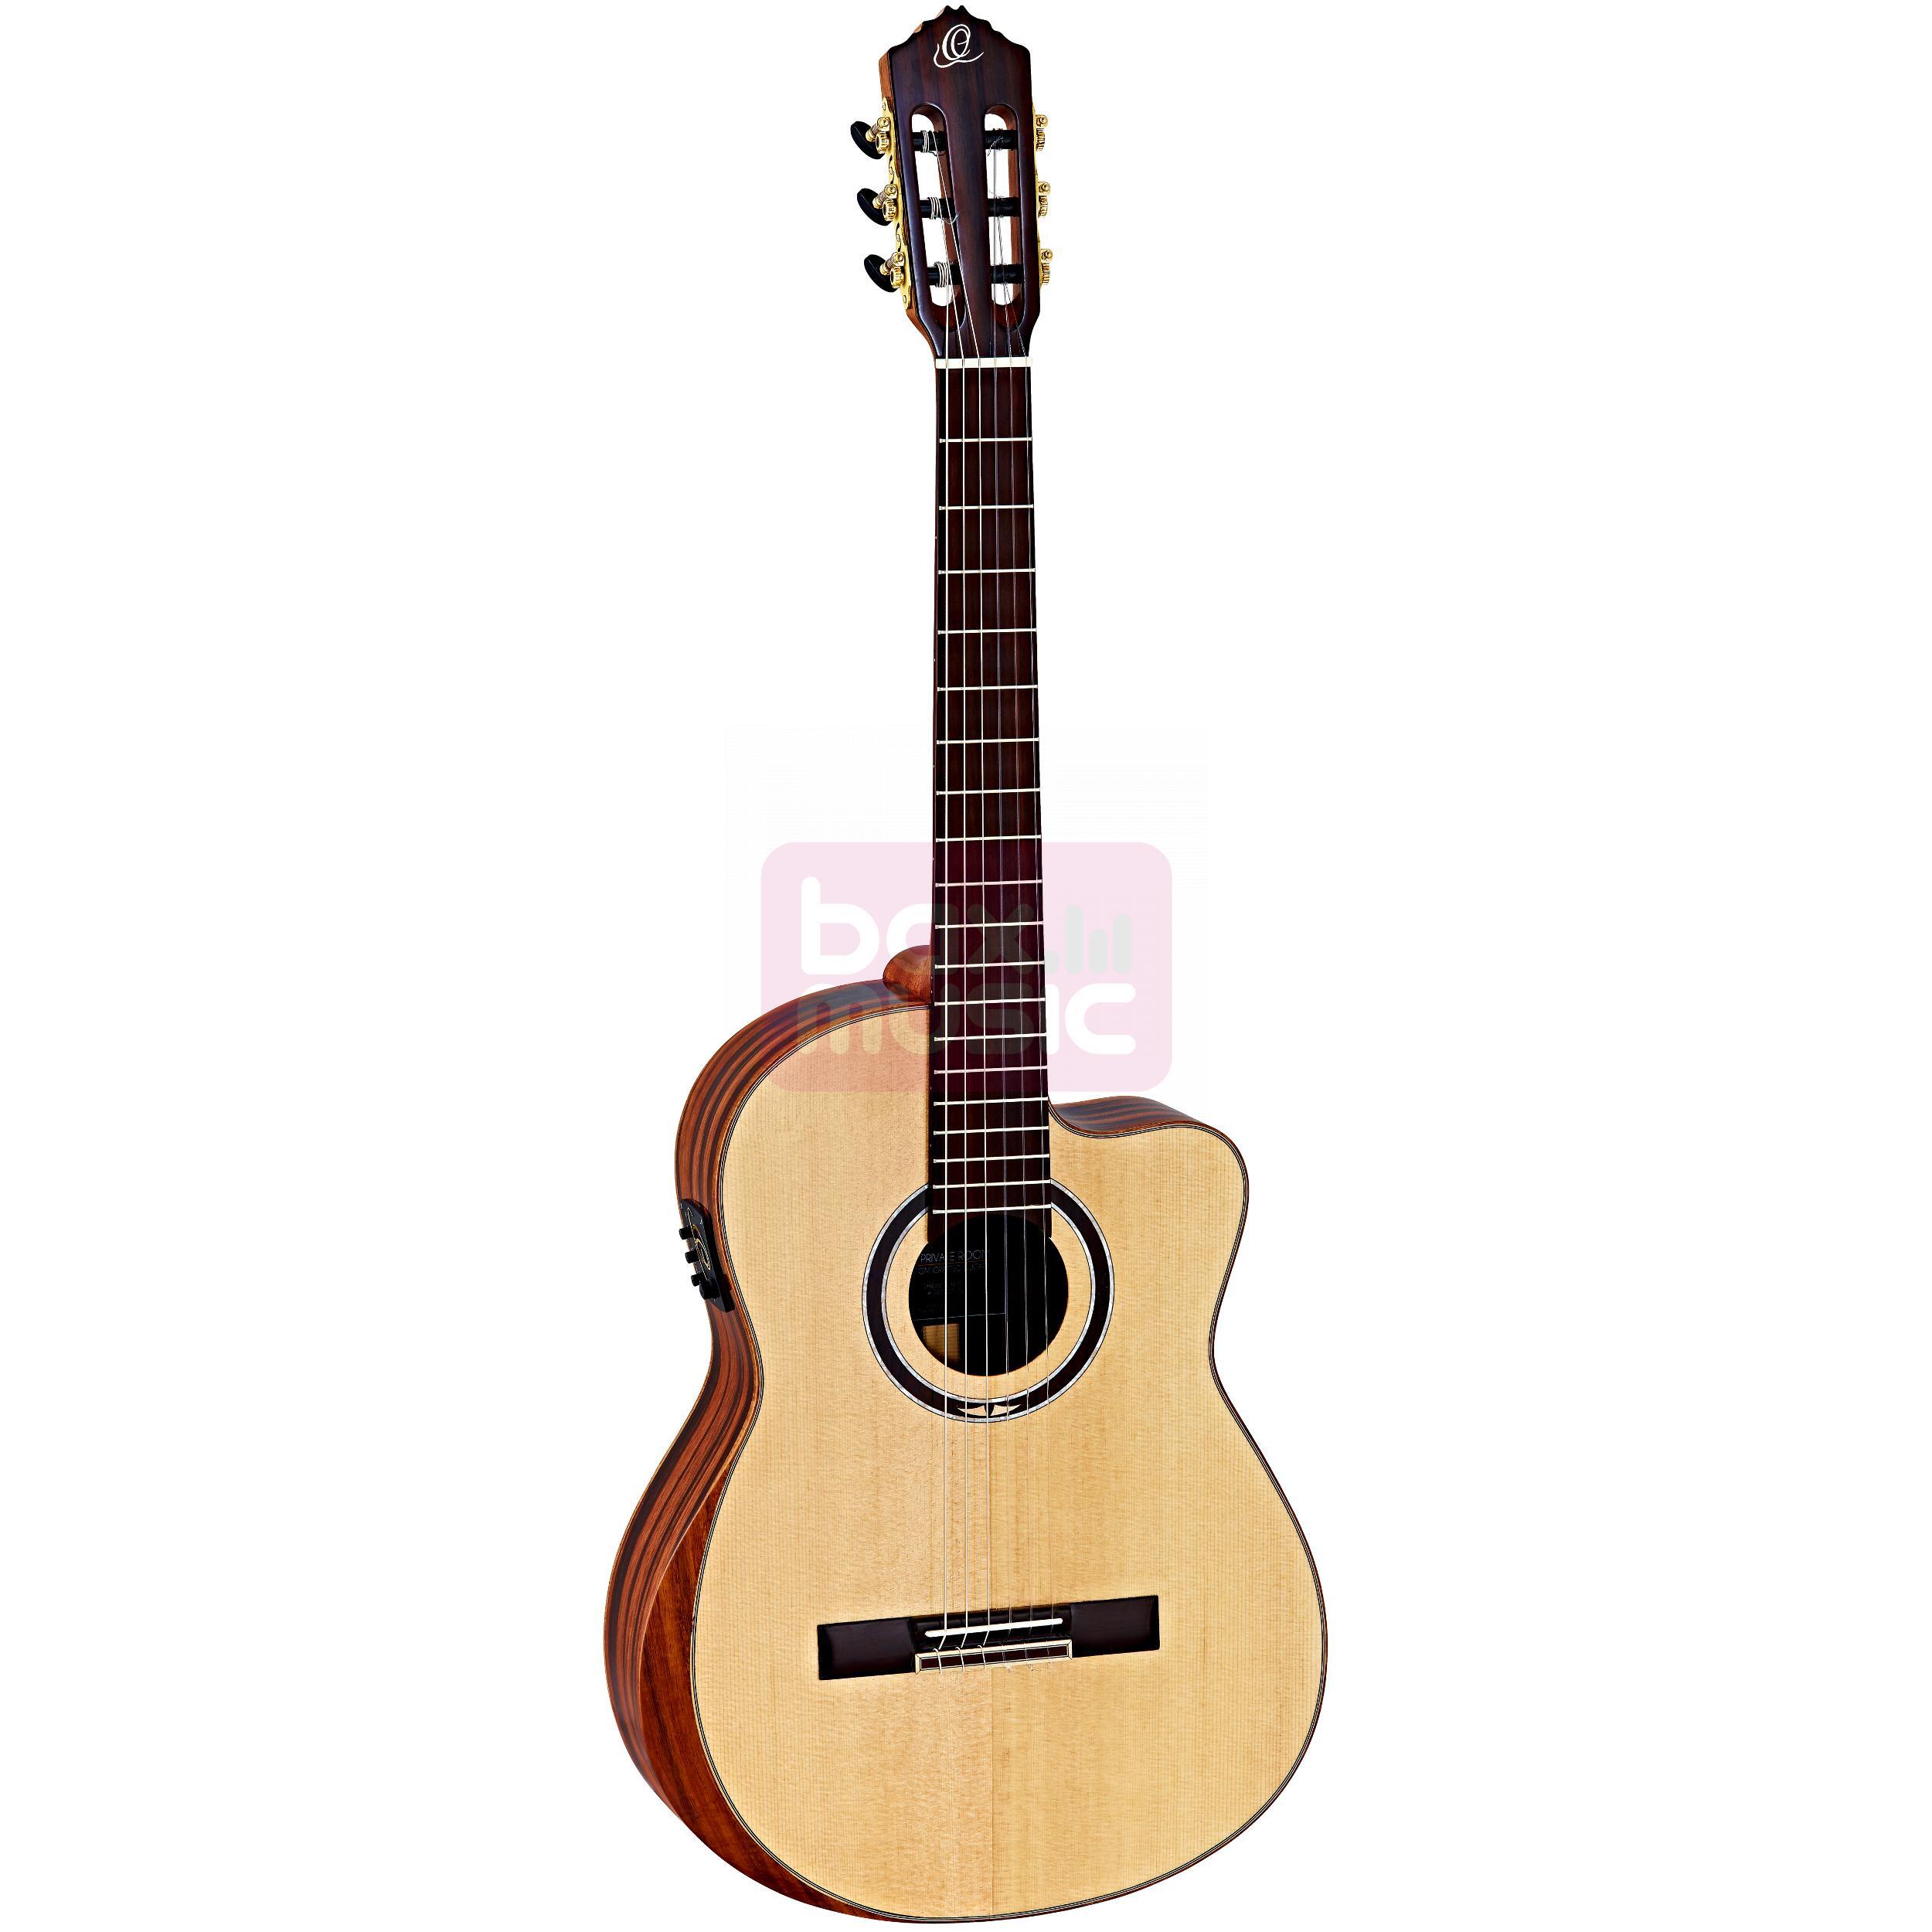 Ortega Striped Suite CE elektrisch akoestische klassieke gitaar